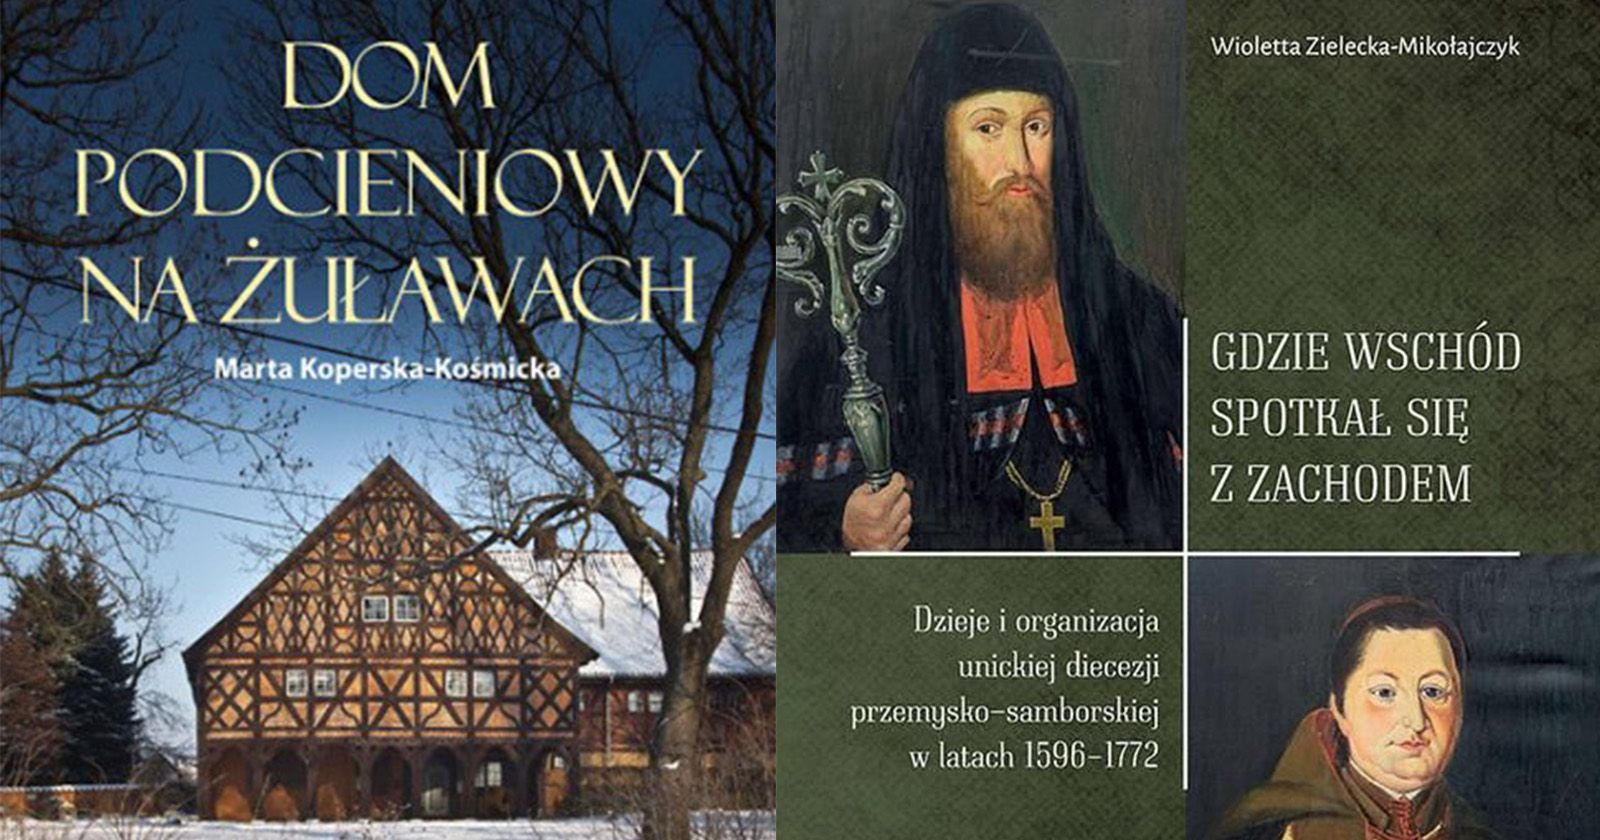  Okładki książek, po lewej "Dom podcieniowy na Żuławach", a po prawej "Gdzie Wschód spotkał się z Zachodem".